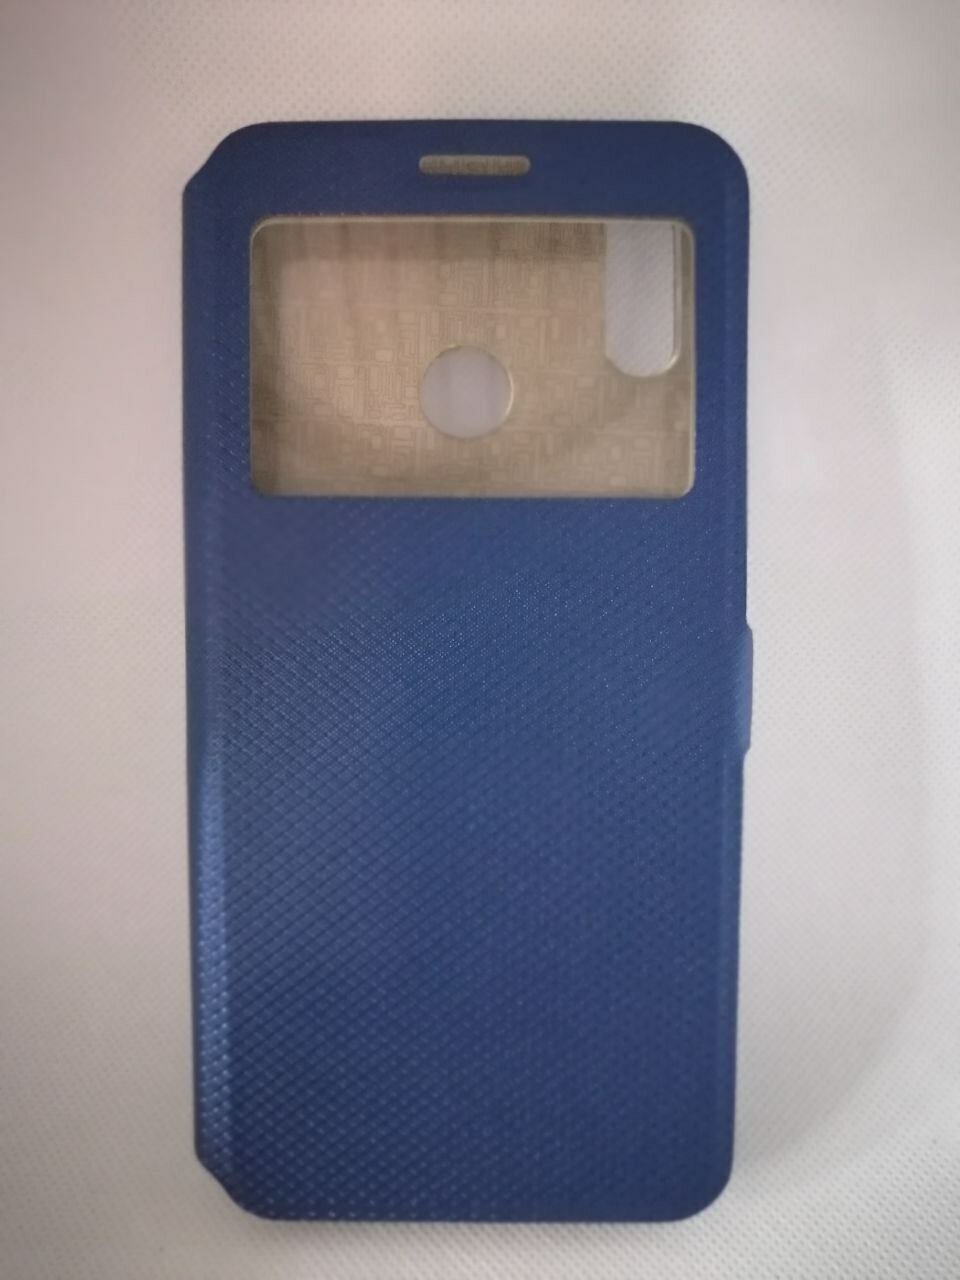 Чехол-книжка для смартфона Huawei Y6 (2019) синего цвета с окошком, магнитной защелкой и подставкой.